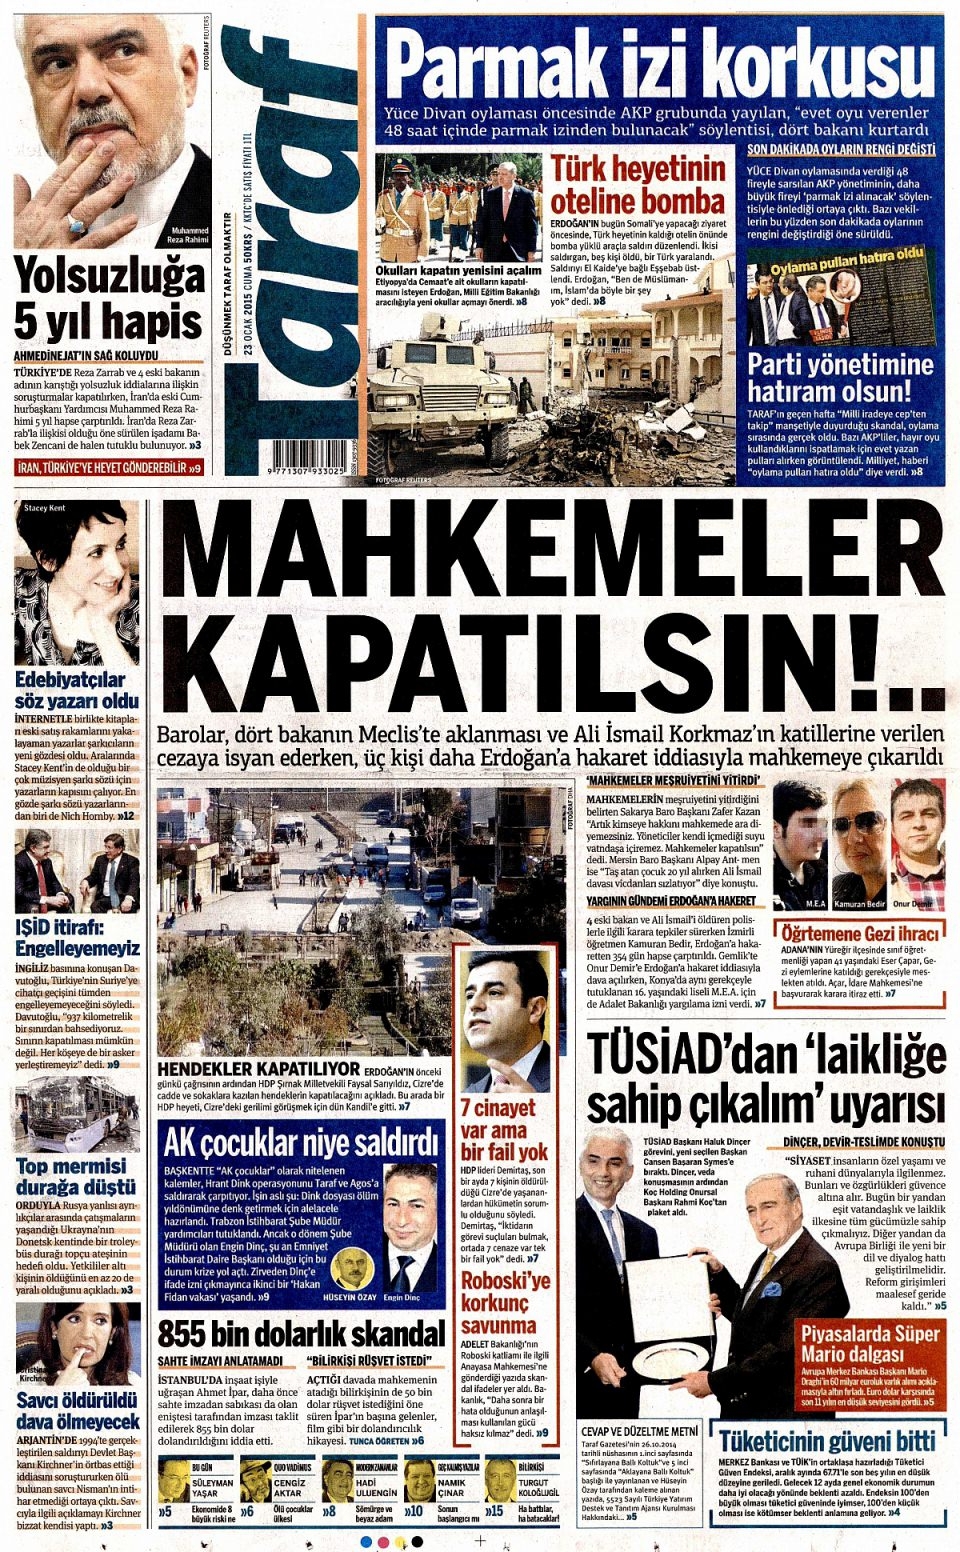 23 Ocak 2015 5 gazete manşetleri 16